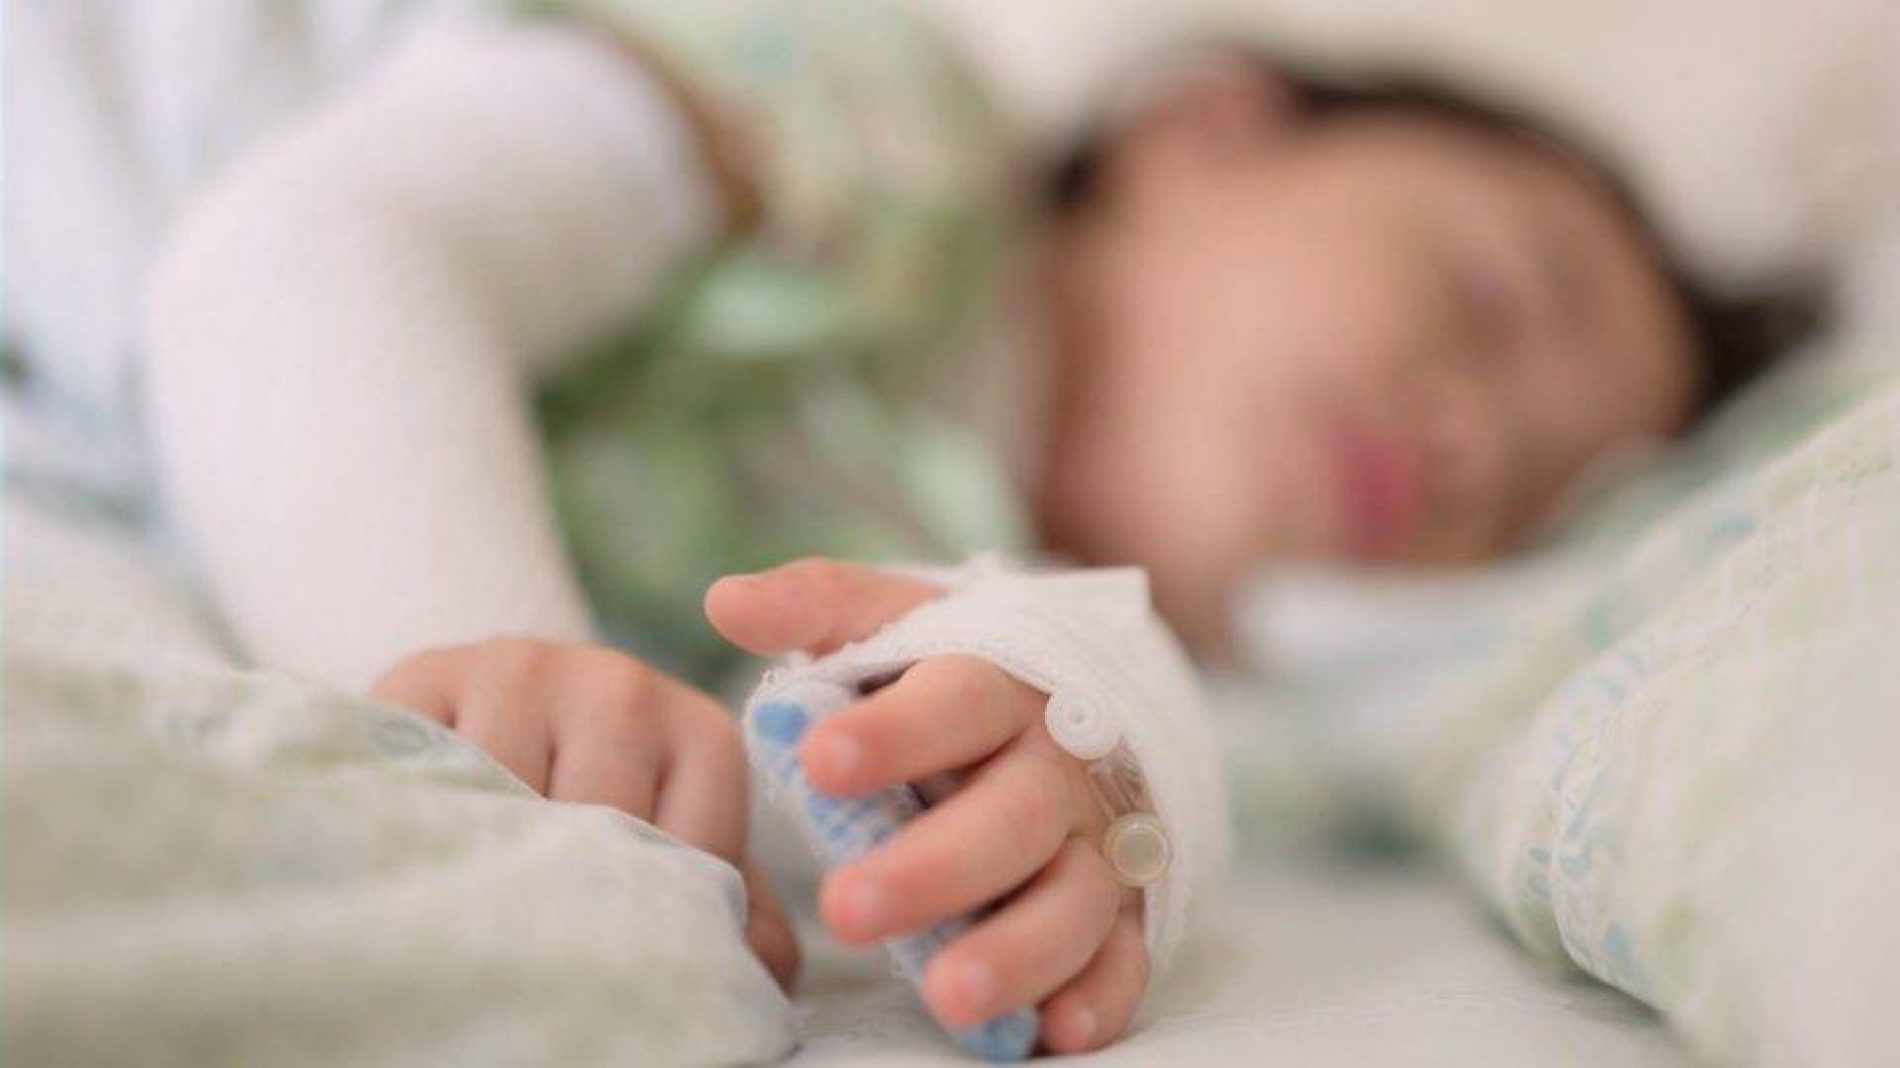 Ministério da Saúde monitora síndrome em crianças associada à covid-19